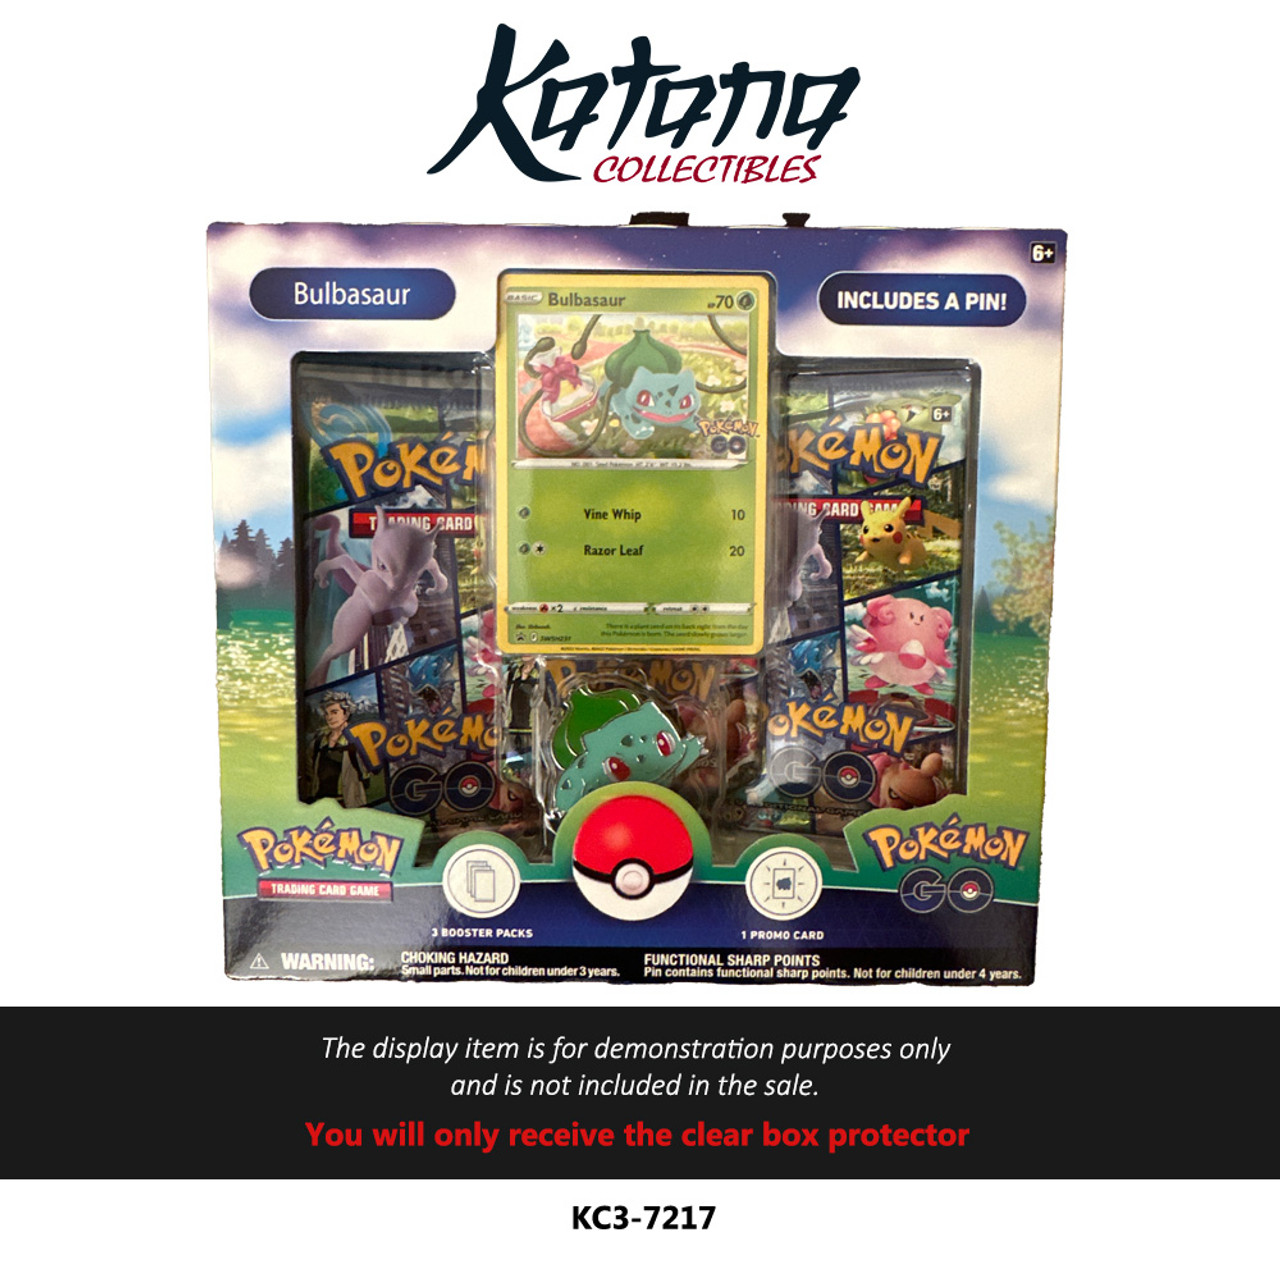 Katana Collectibles Protector For Pokémon Go Pin Collection